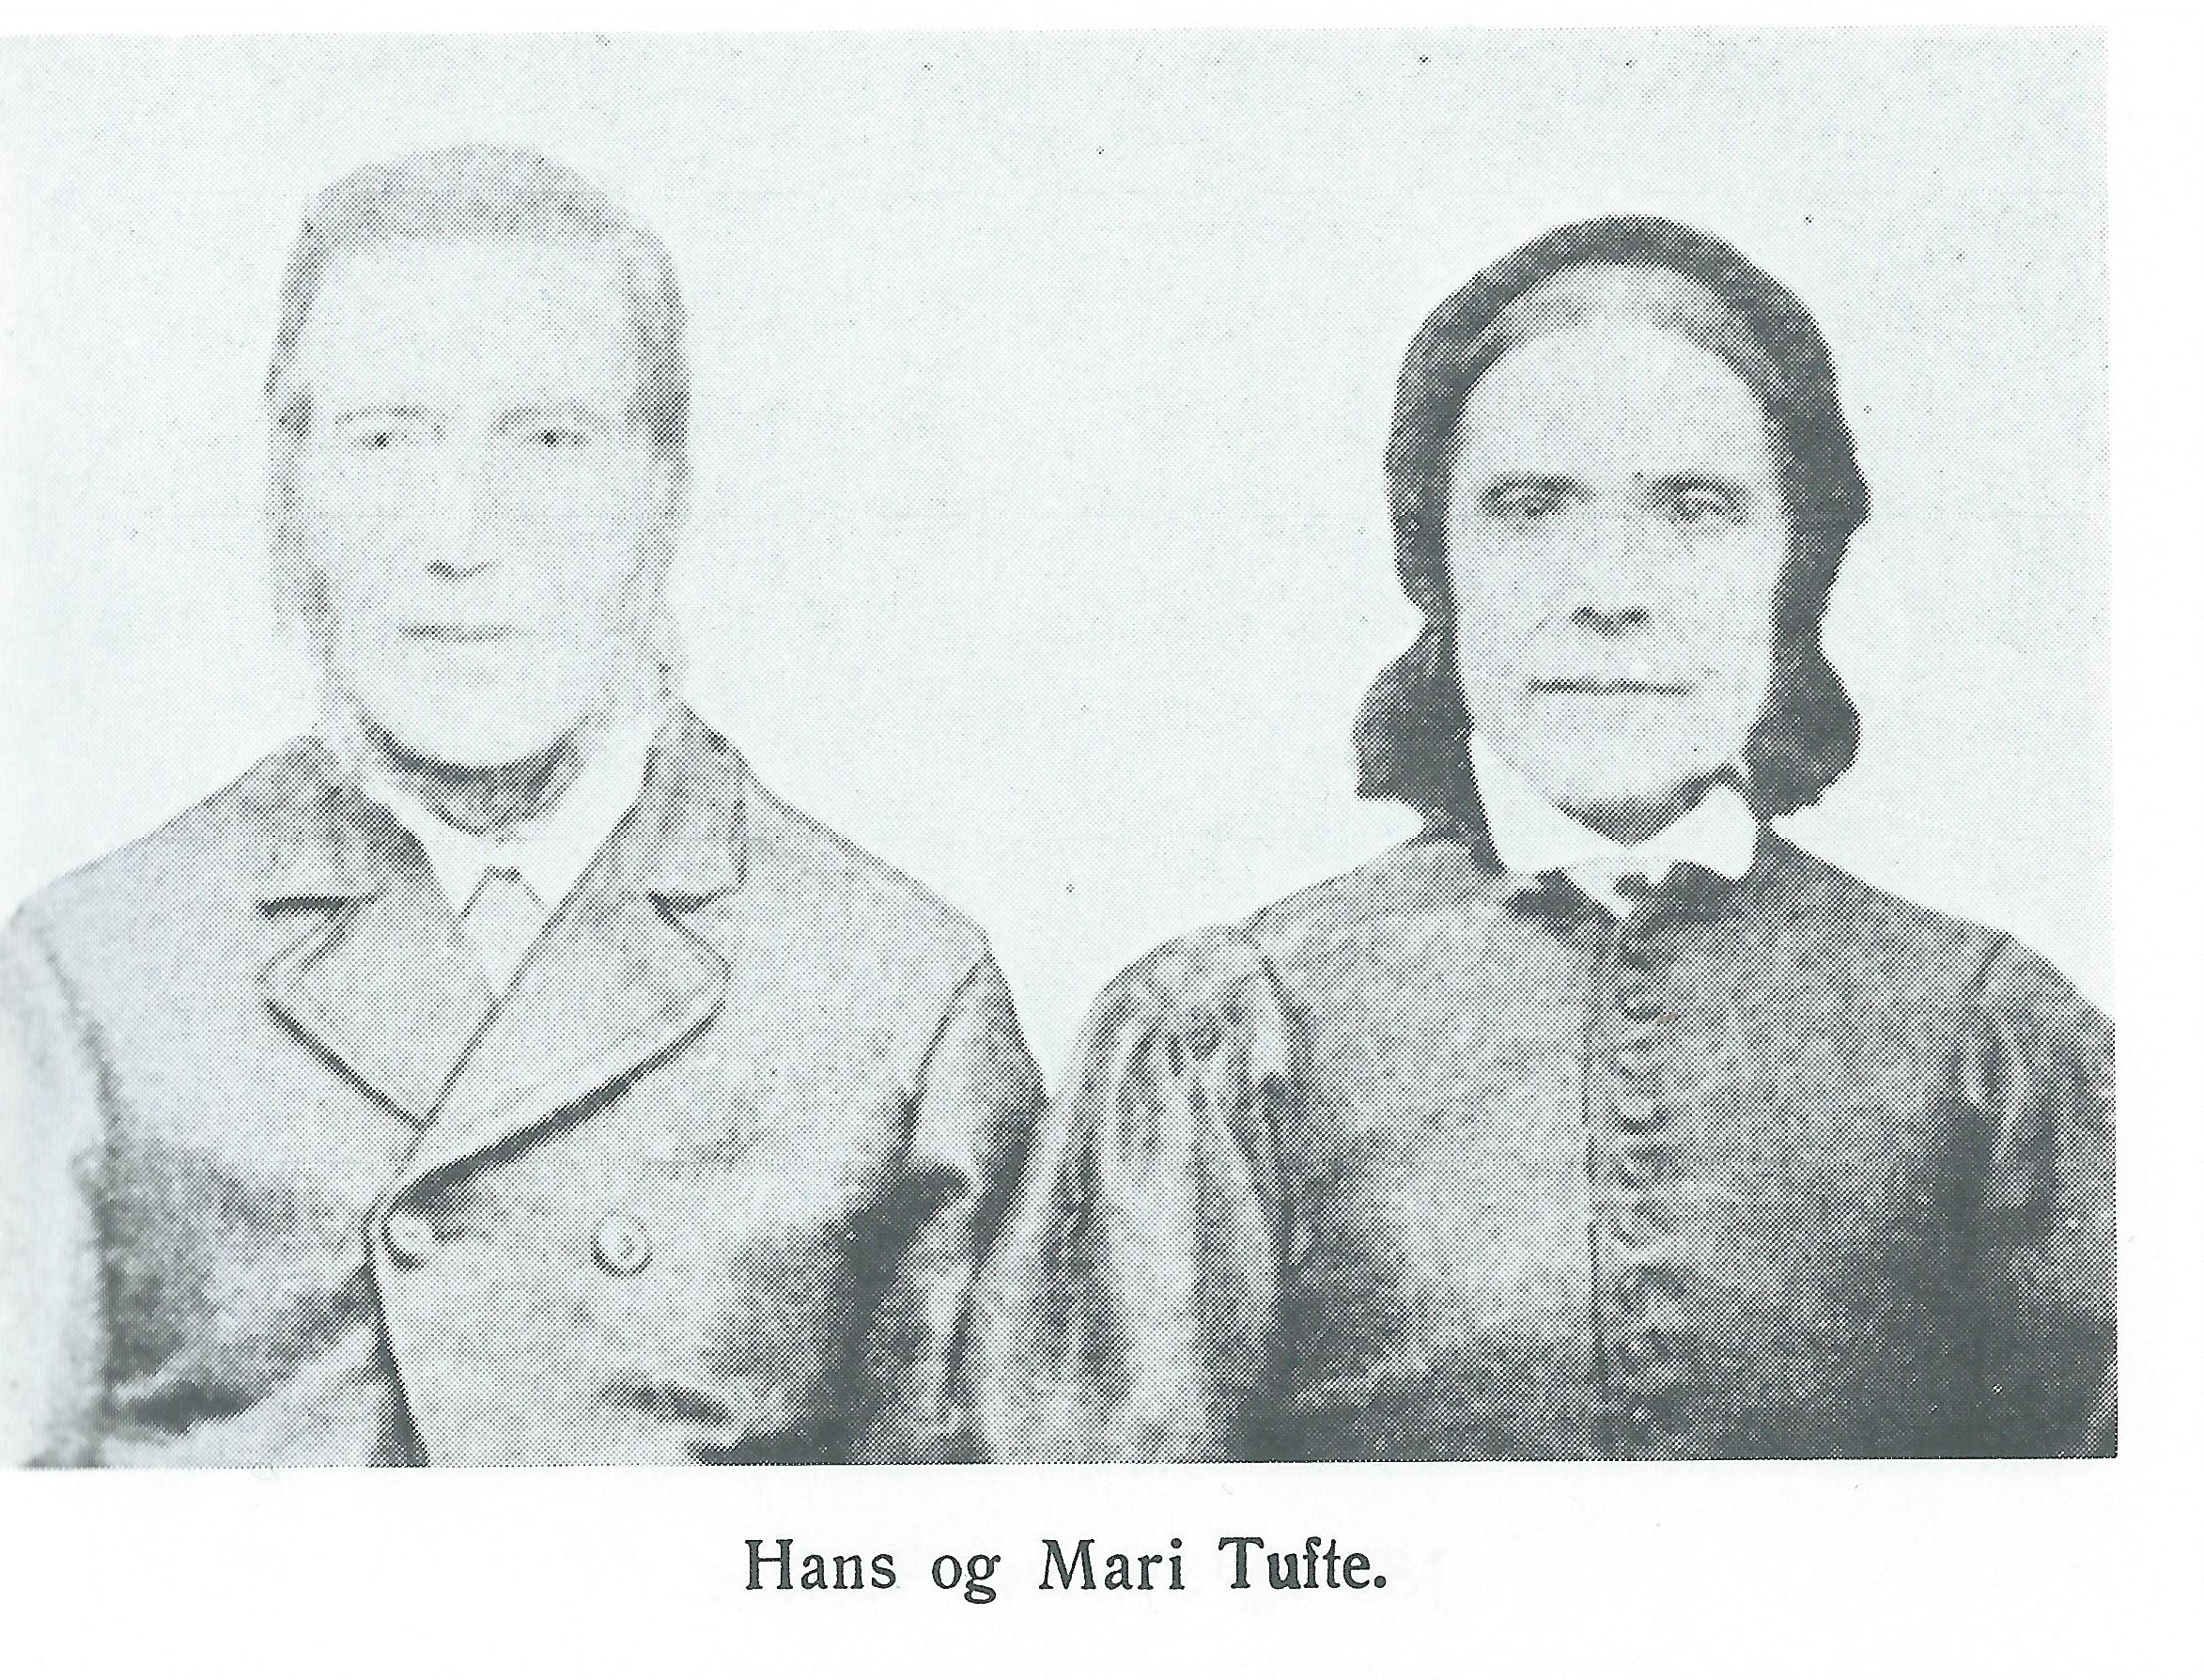 Hans and Mari